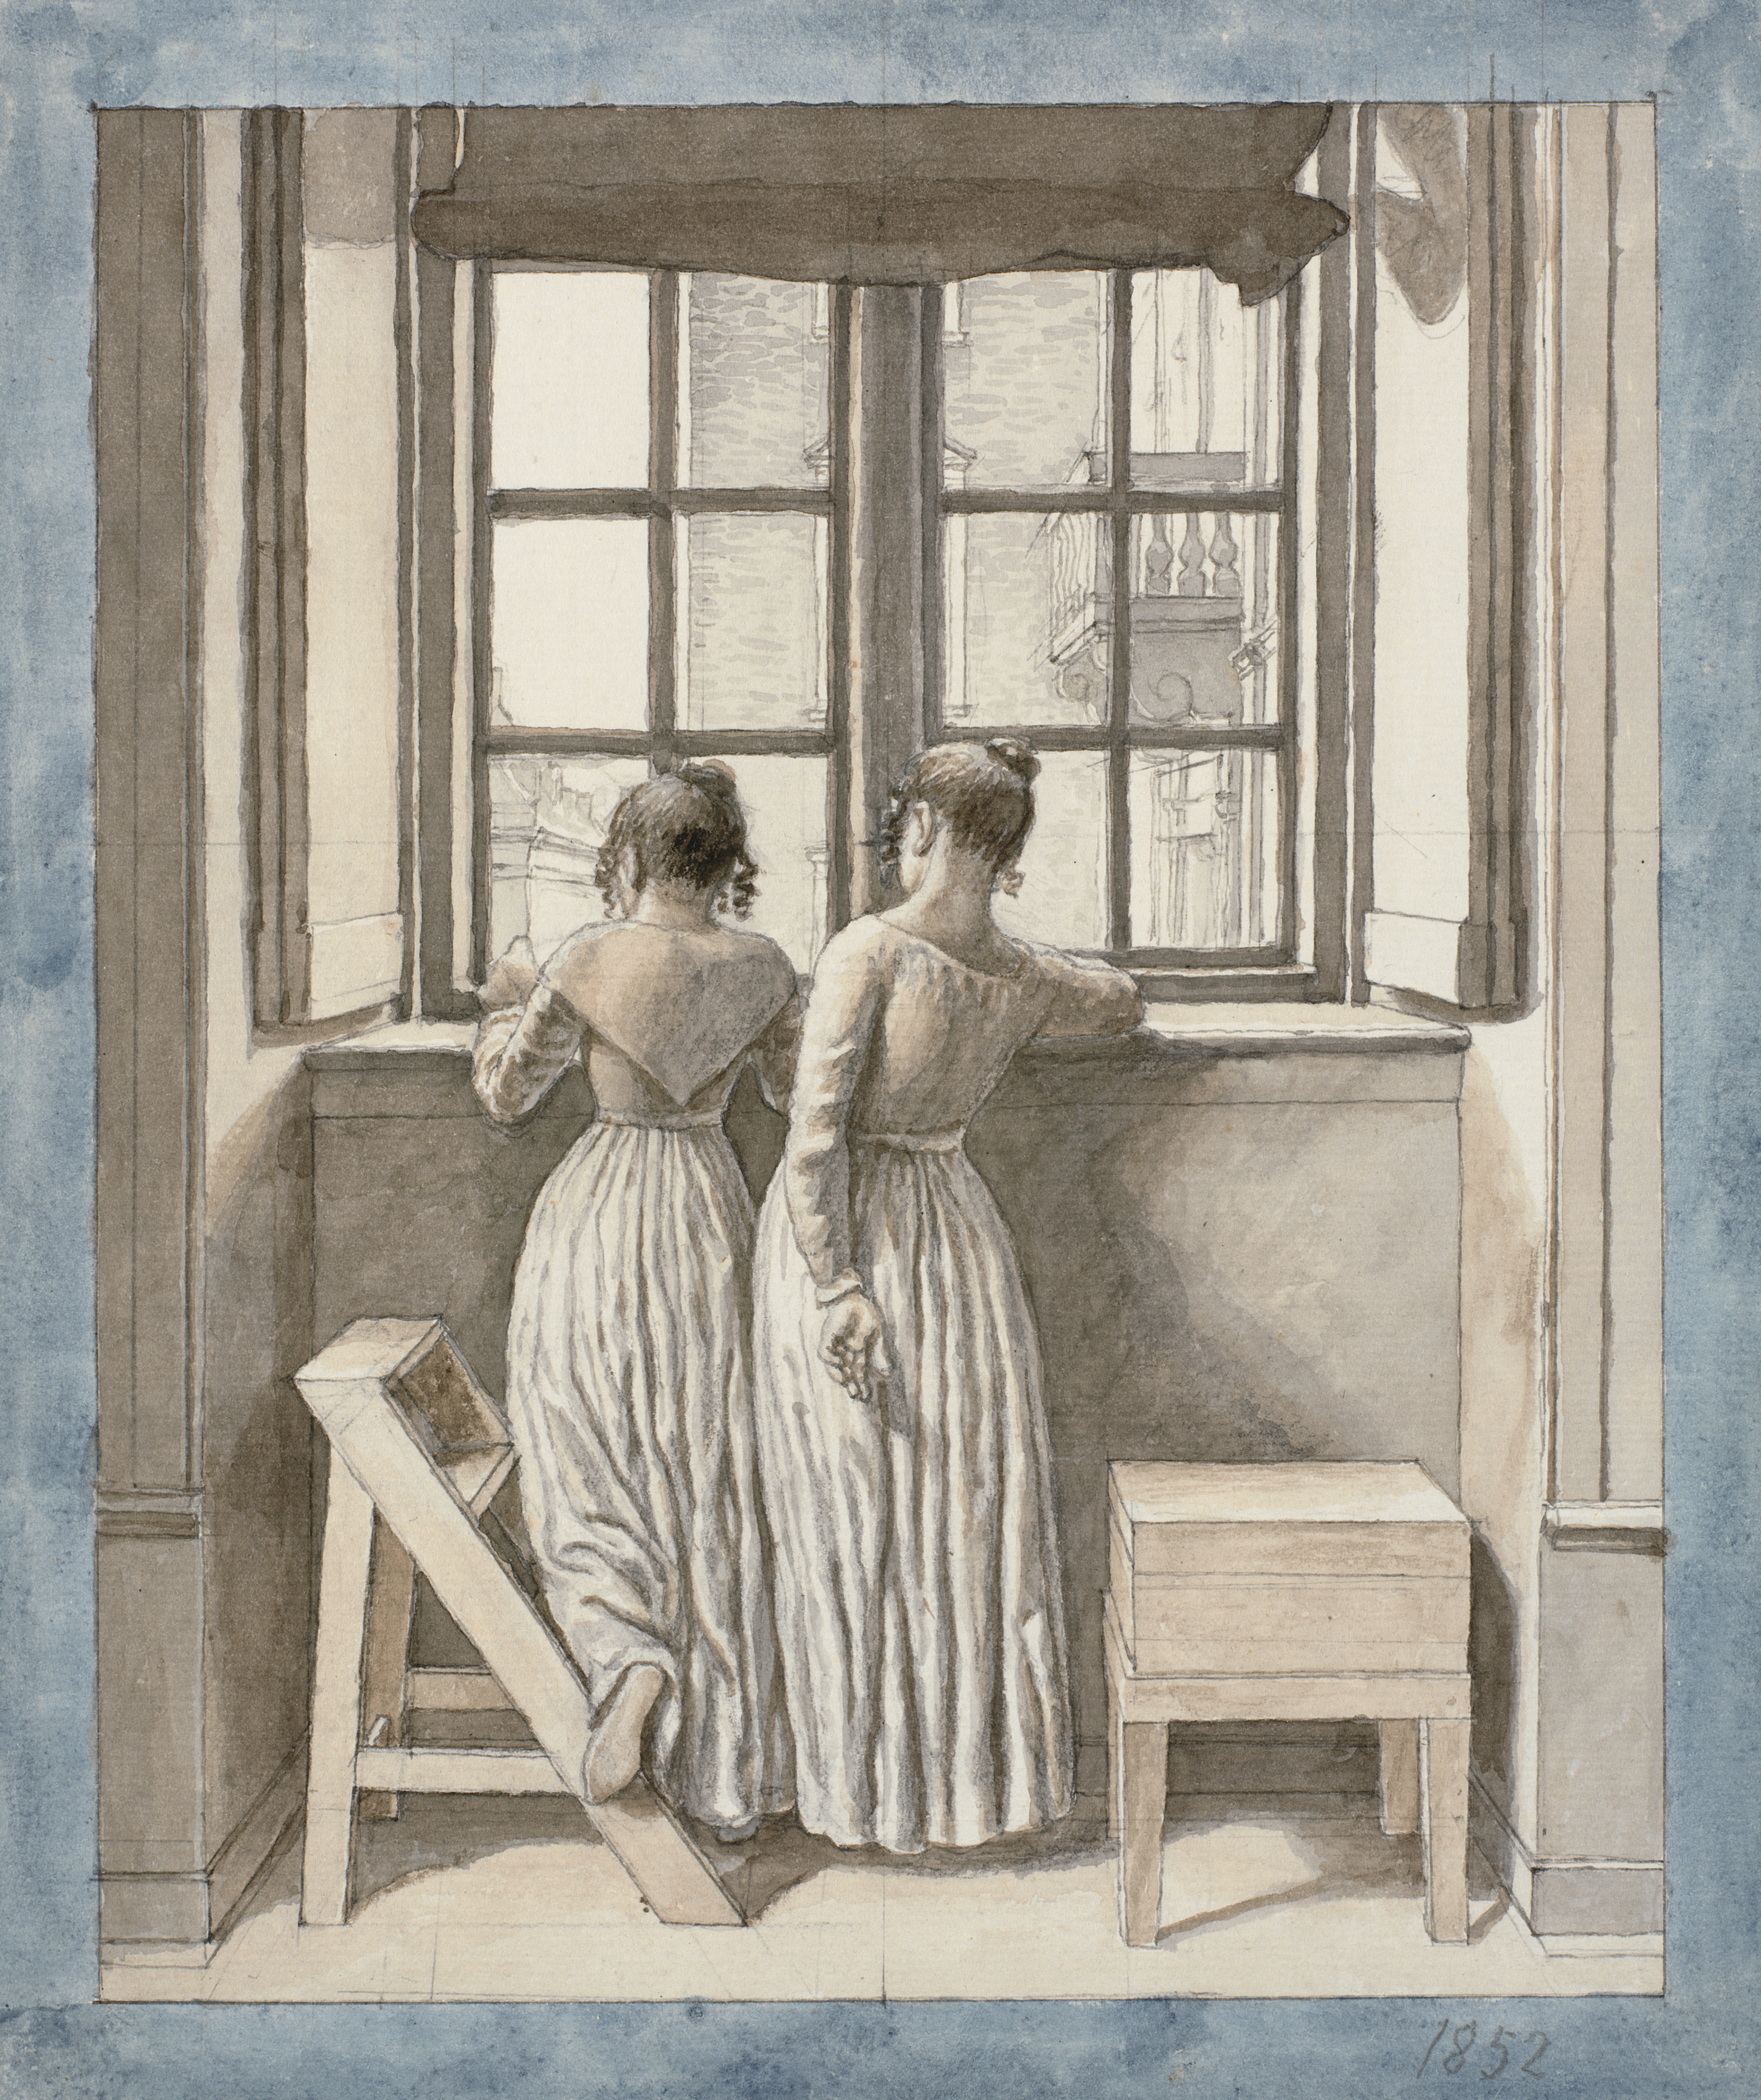 من على شرفة مرسم الفنان by C.W. Eckersberg - 1852 - 274 x 231 مم 